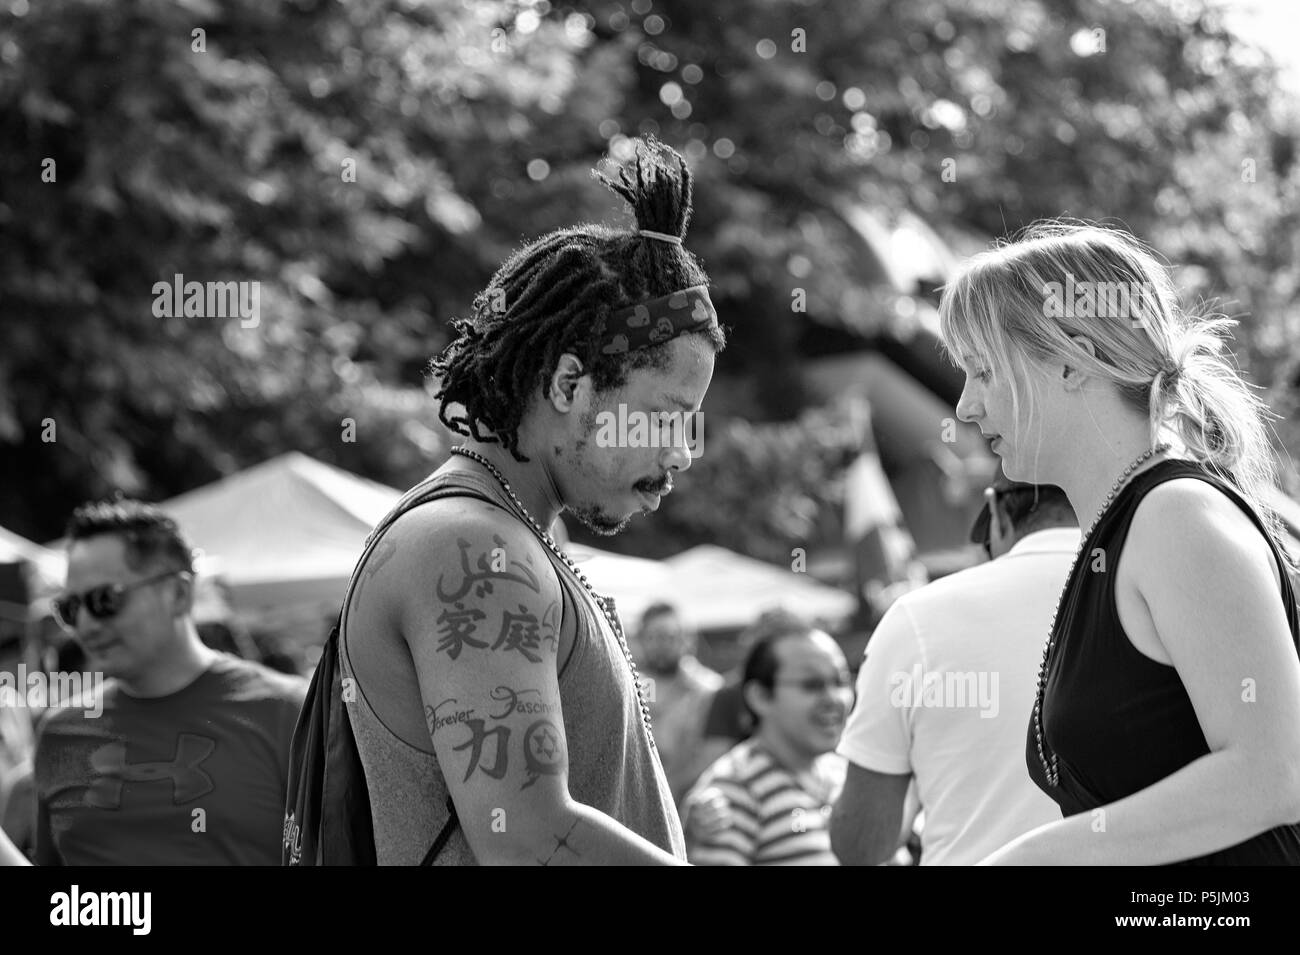 Ein junges Paar beginnt an der Outdoor festival Hola Carolina Asheville, NC, USA zu tanzen, ein wenig schüchtern. Stockfoto